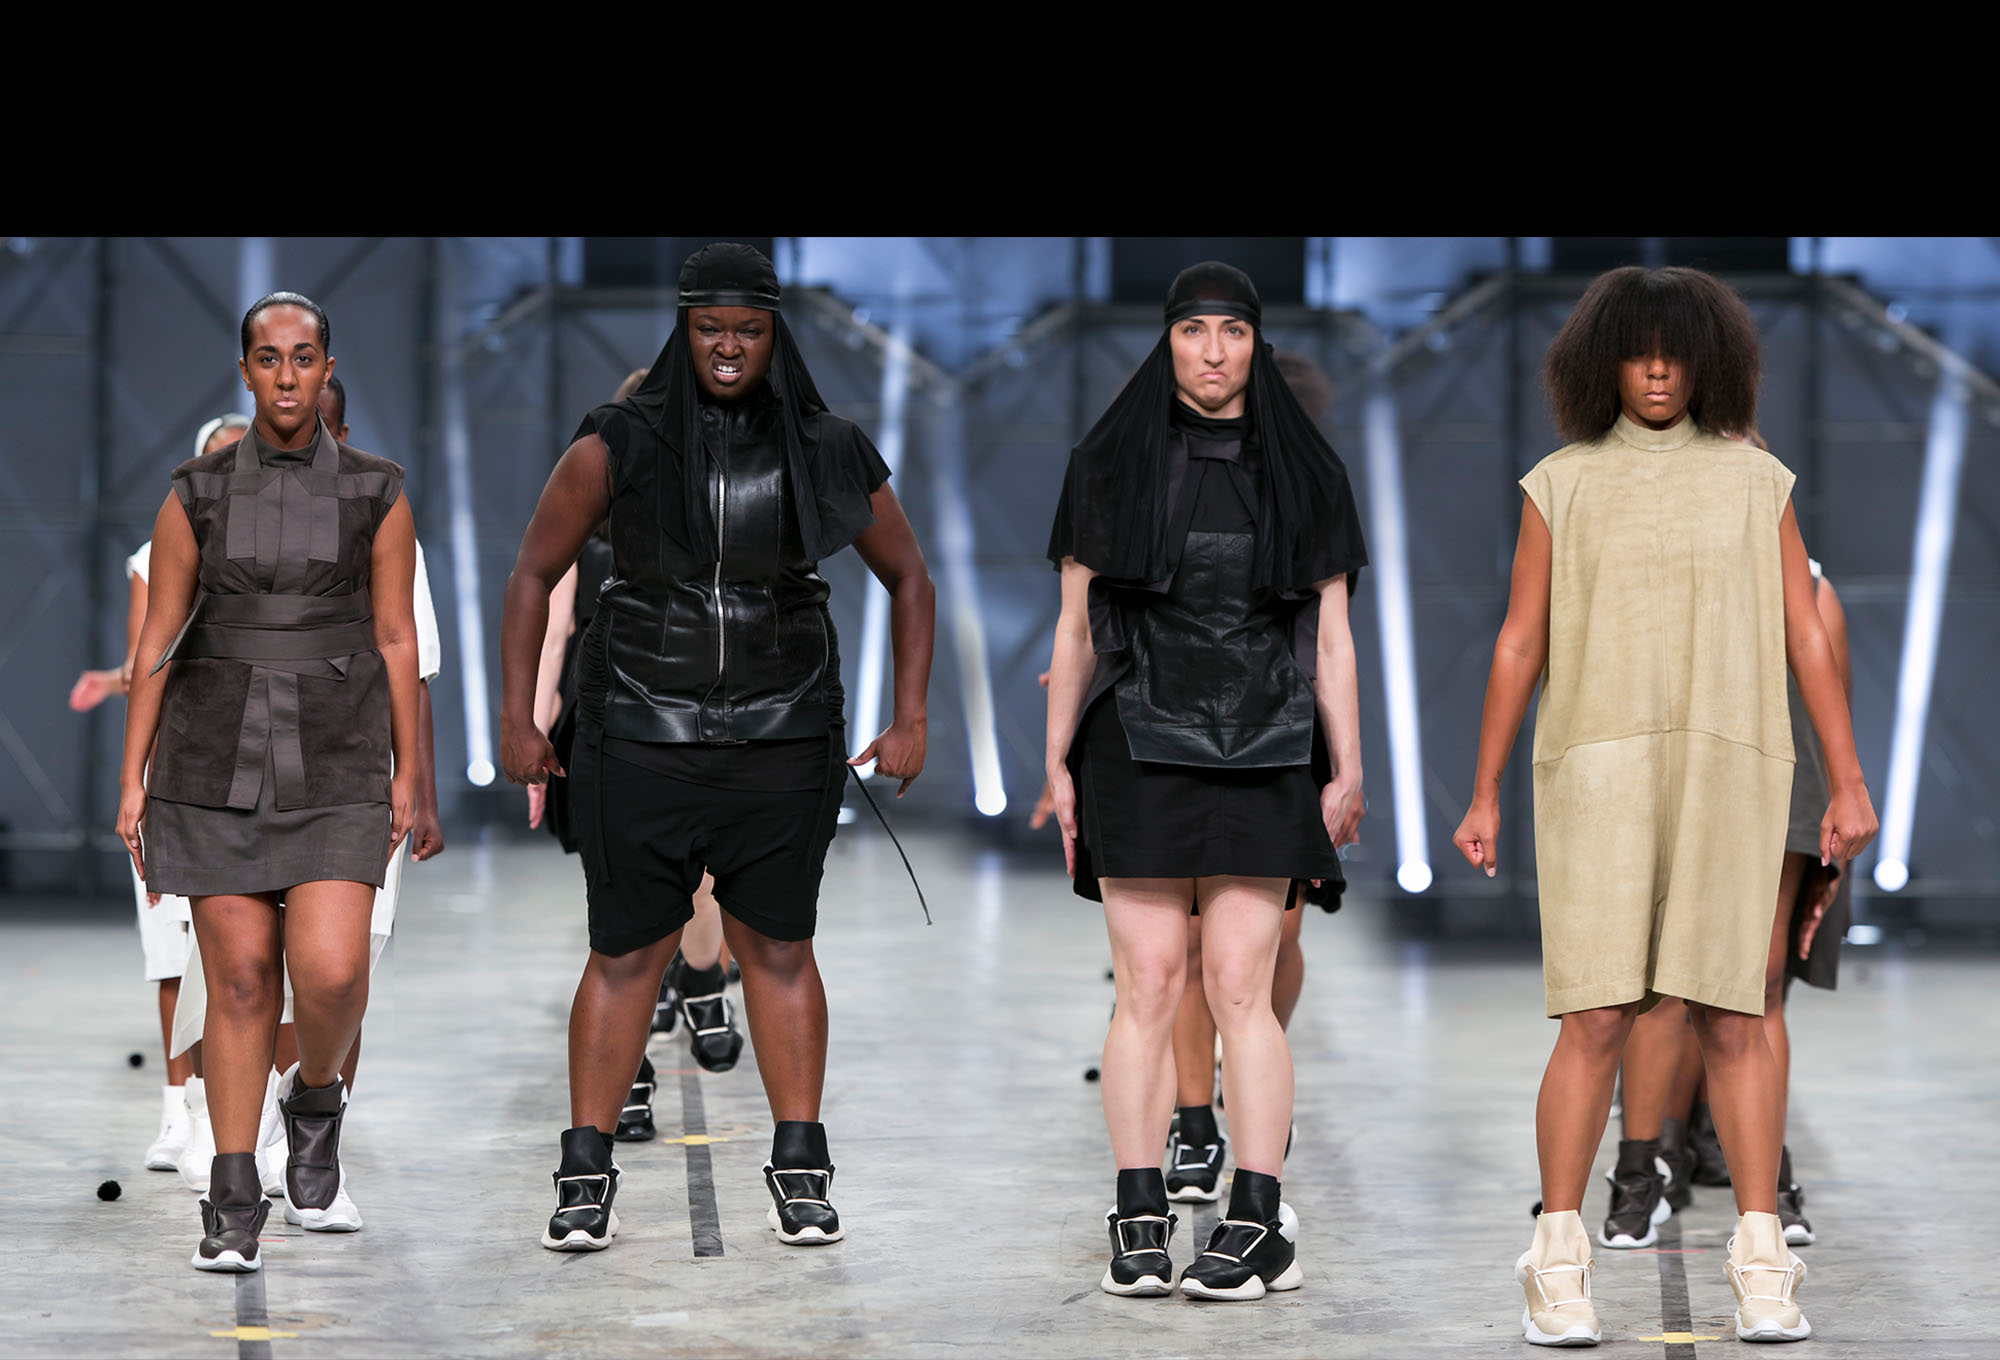 Screen shot from fashion show featuring 4 women commanding the catwalk